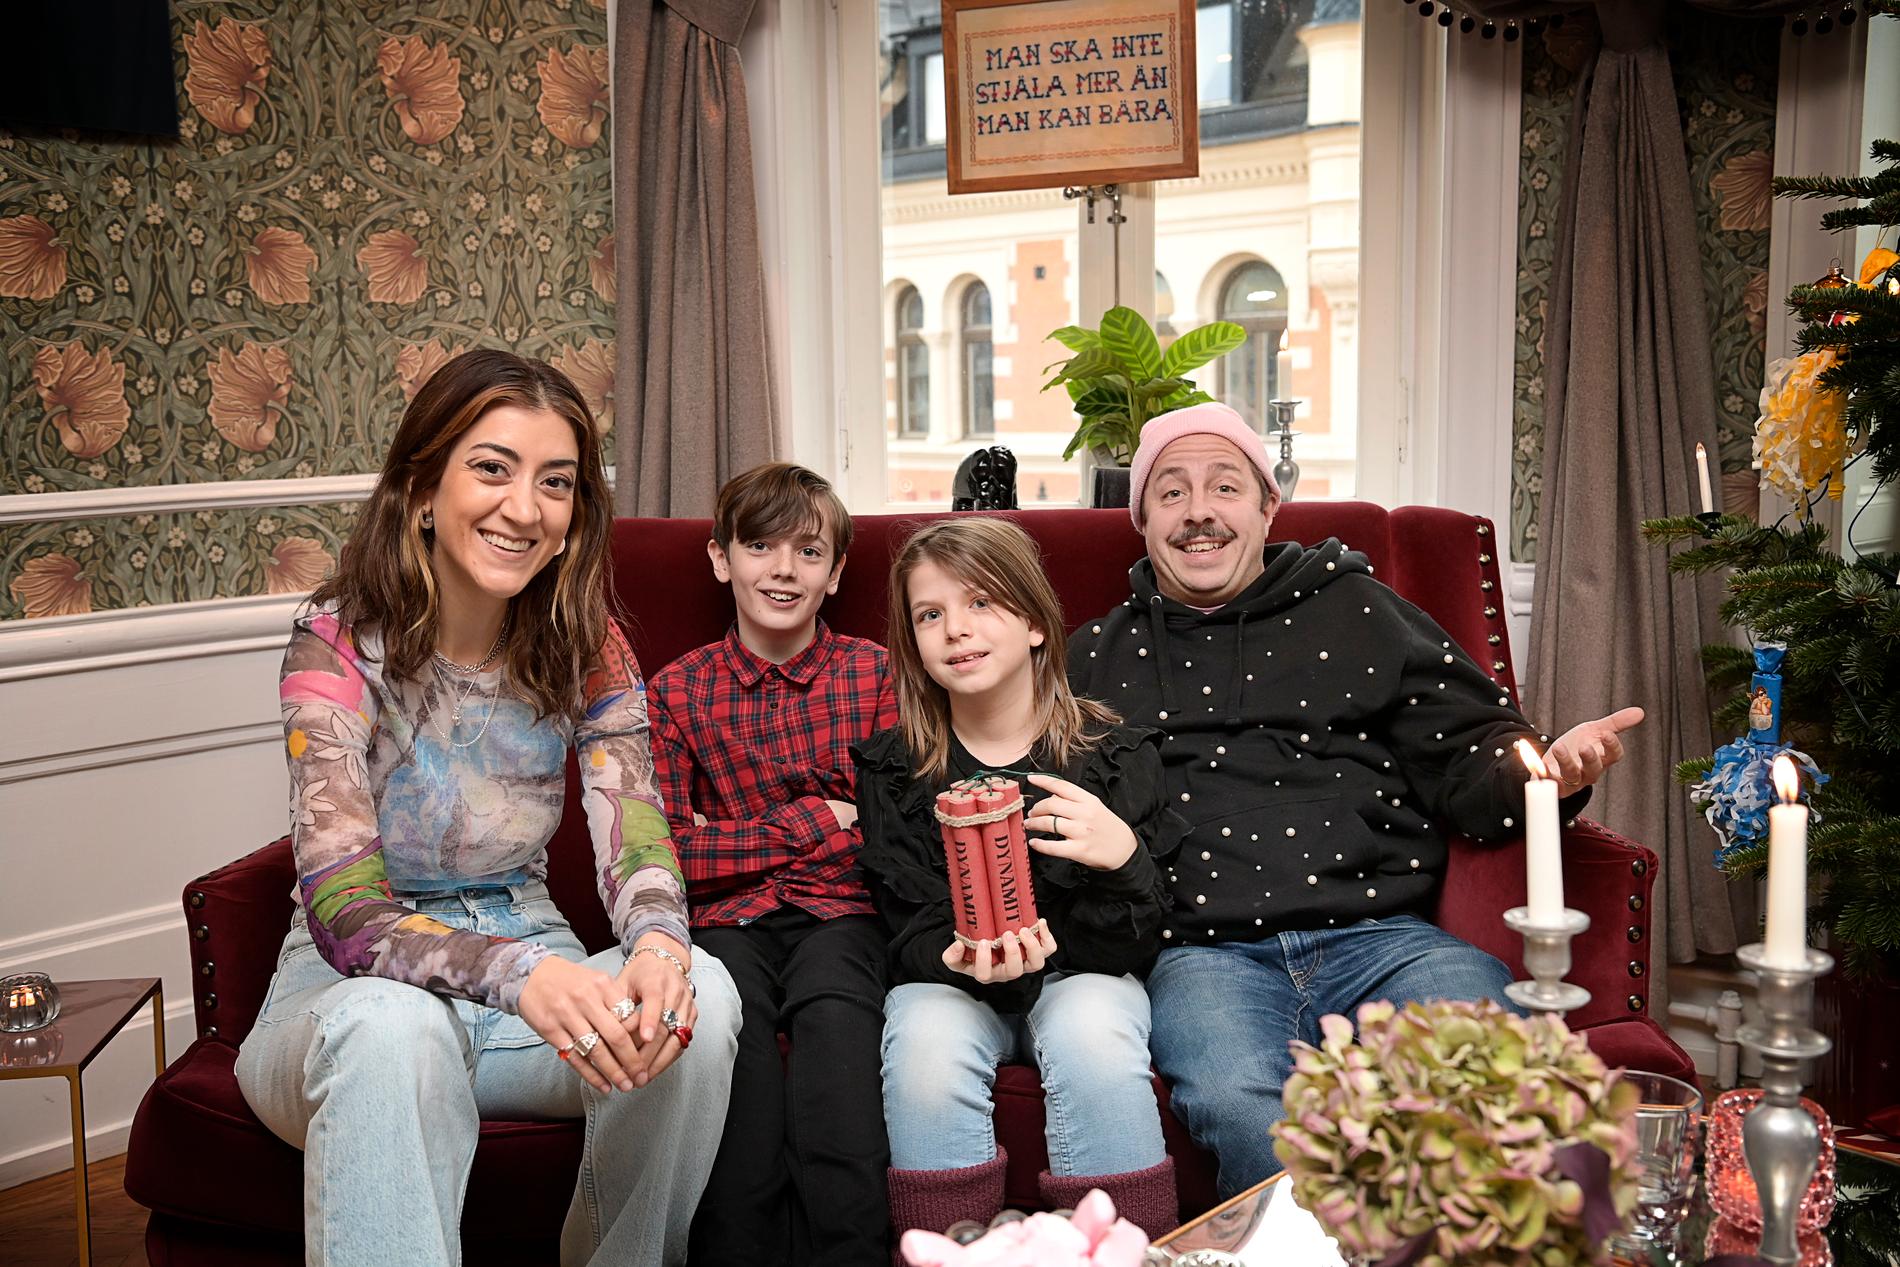 ”En helt vanlig tjuvfamilj”. Gizem Erdogan, Axel Adelöw, Paloma Grandin och David Sundin gör huvudrollerna i ”En hederlig jul med familjen Knyckertz” i SVT.